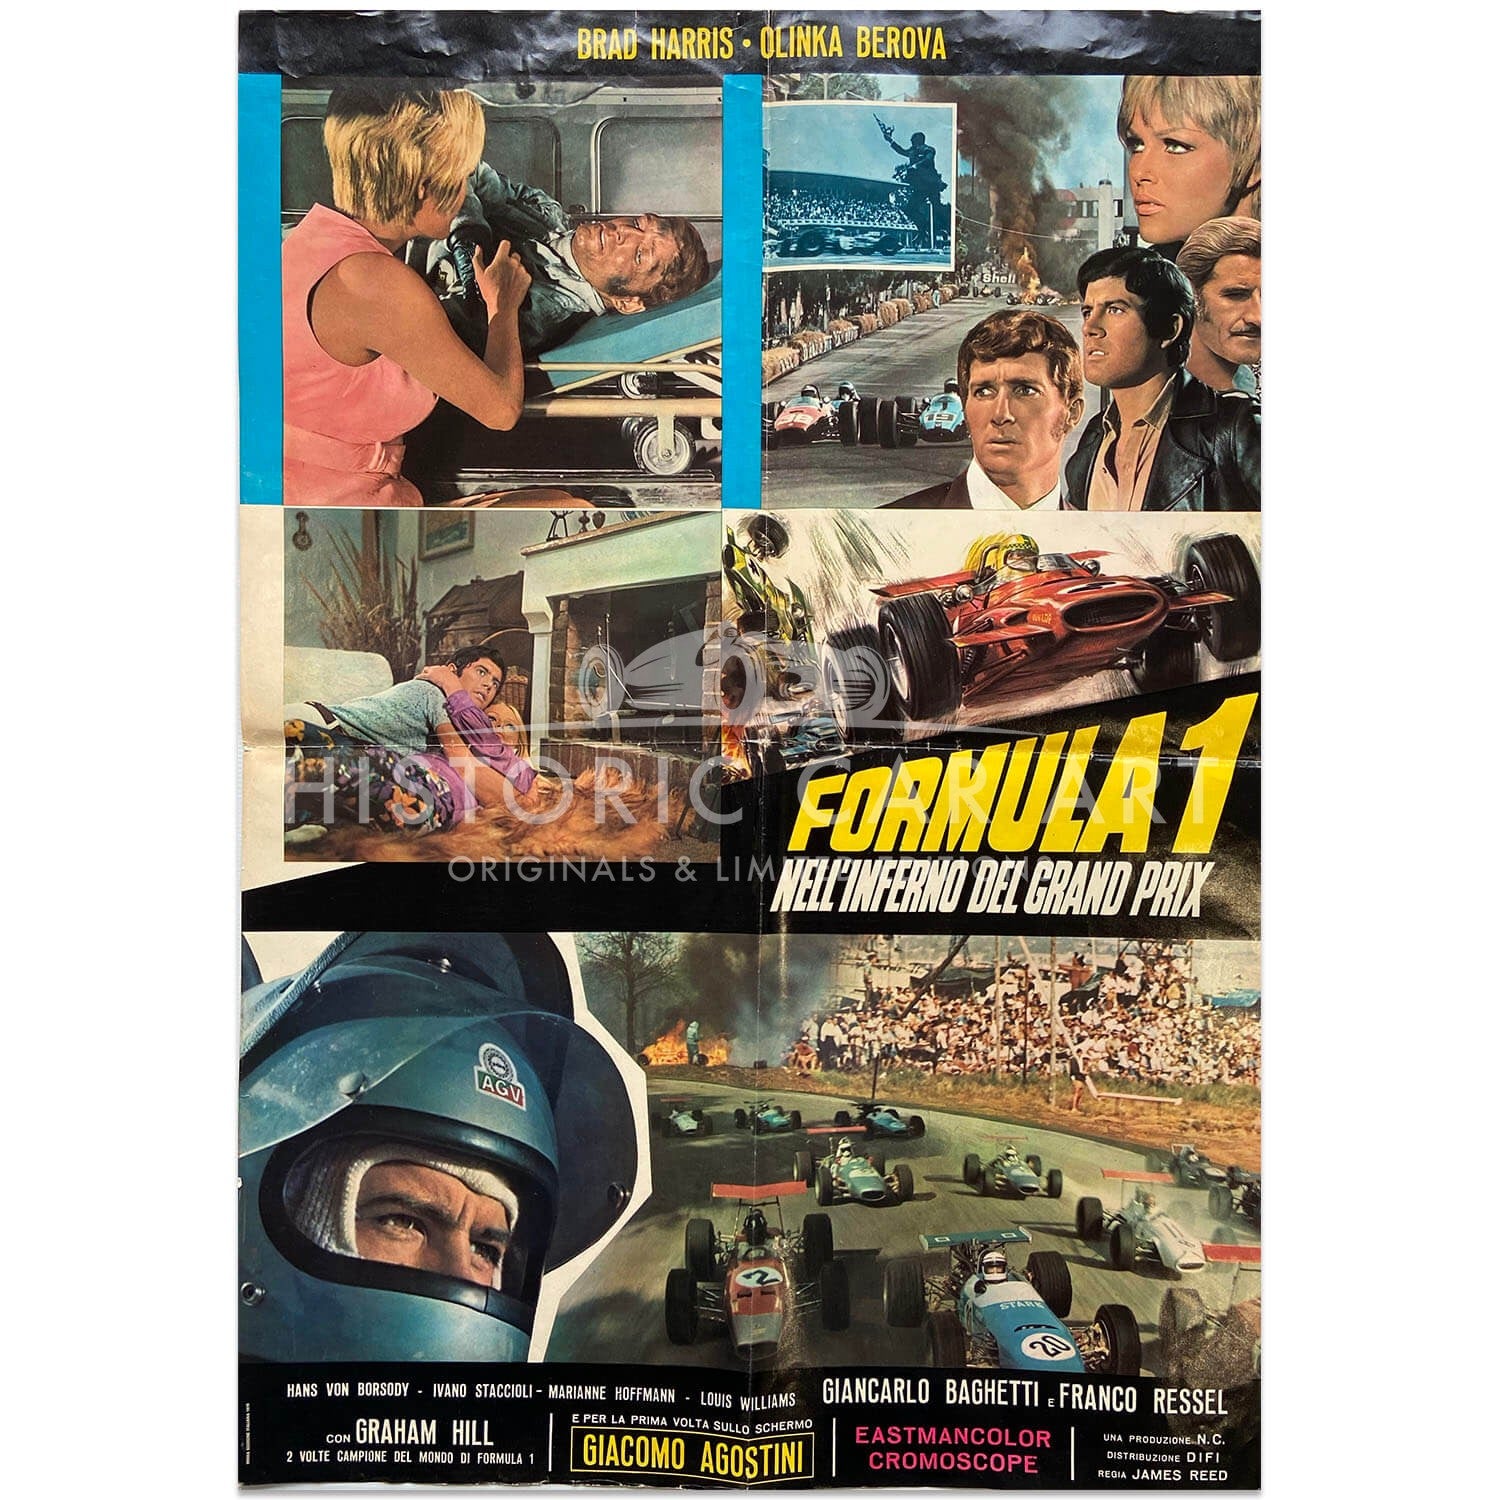 Italian | Formula 1 Film | Nell Inferno del Grand Prix | Original Poster #2